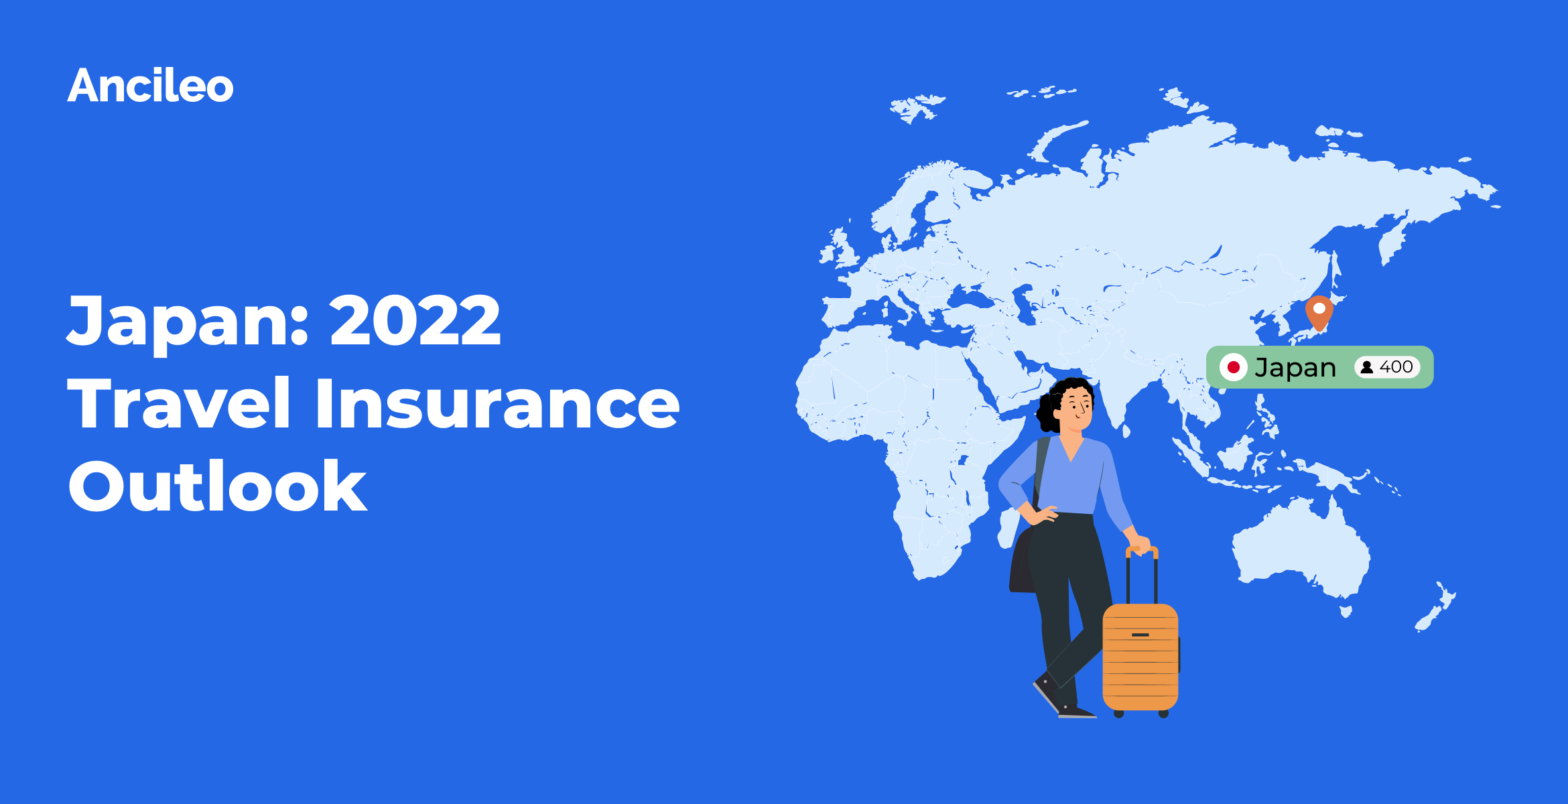 Japan: 2022 Travel Insurance Outlook